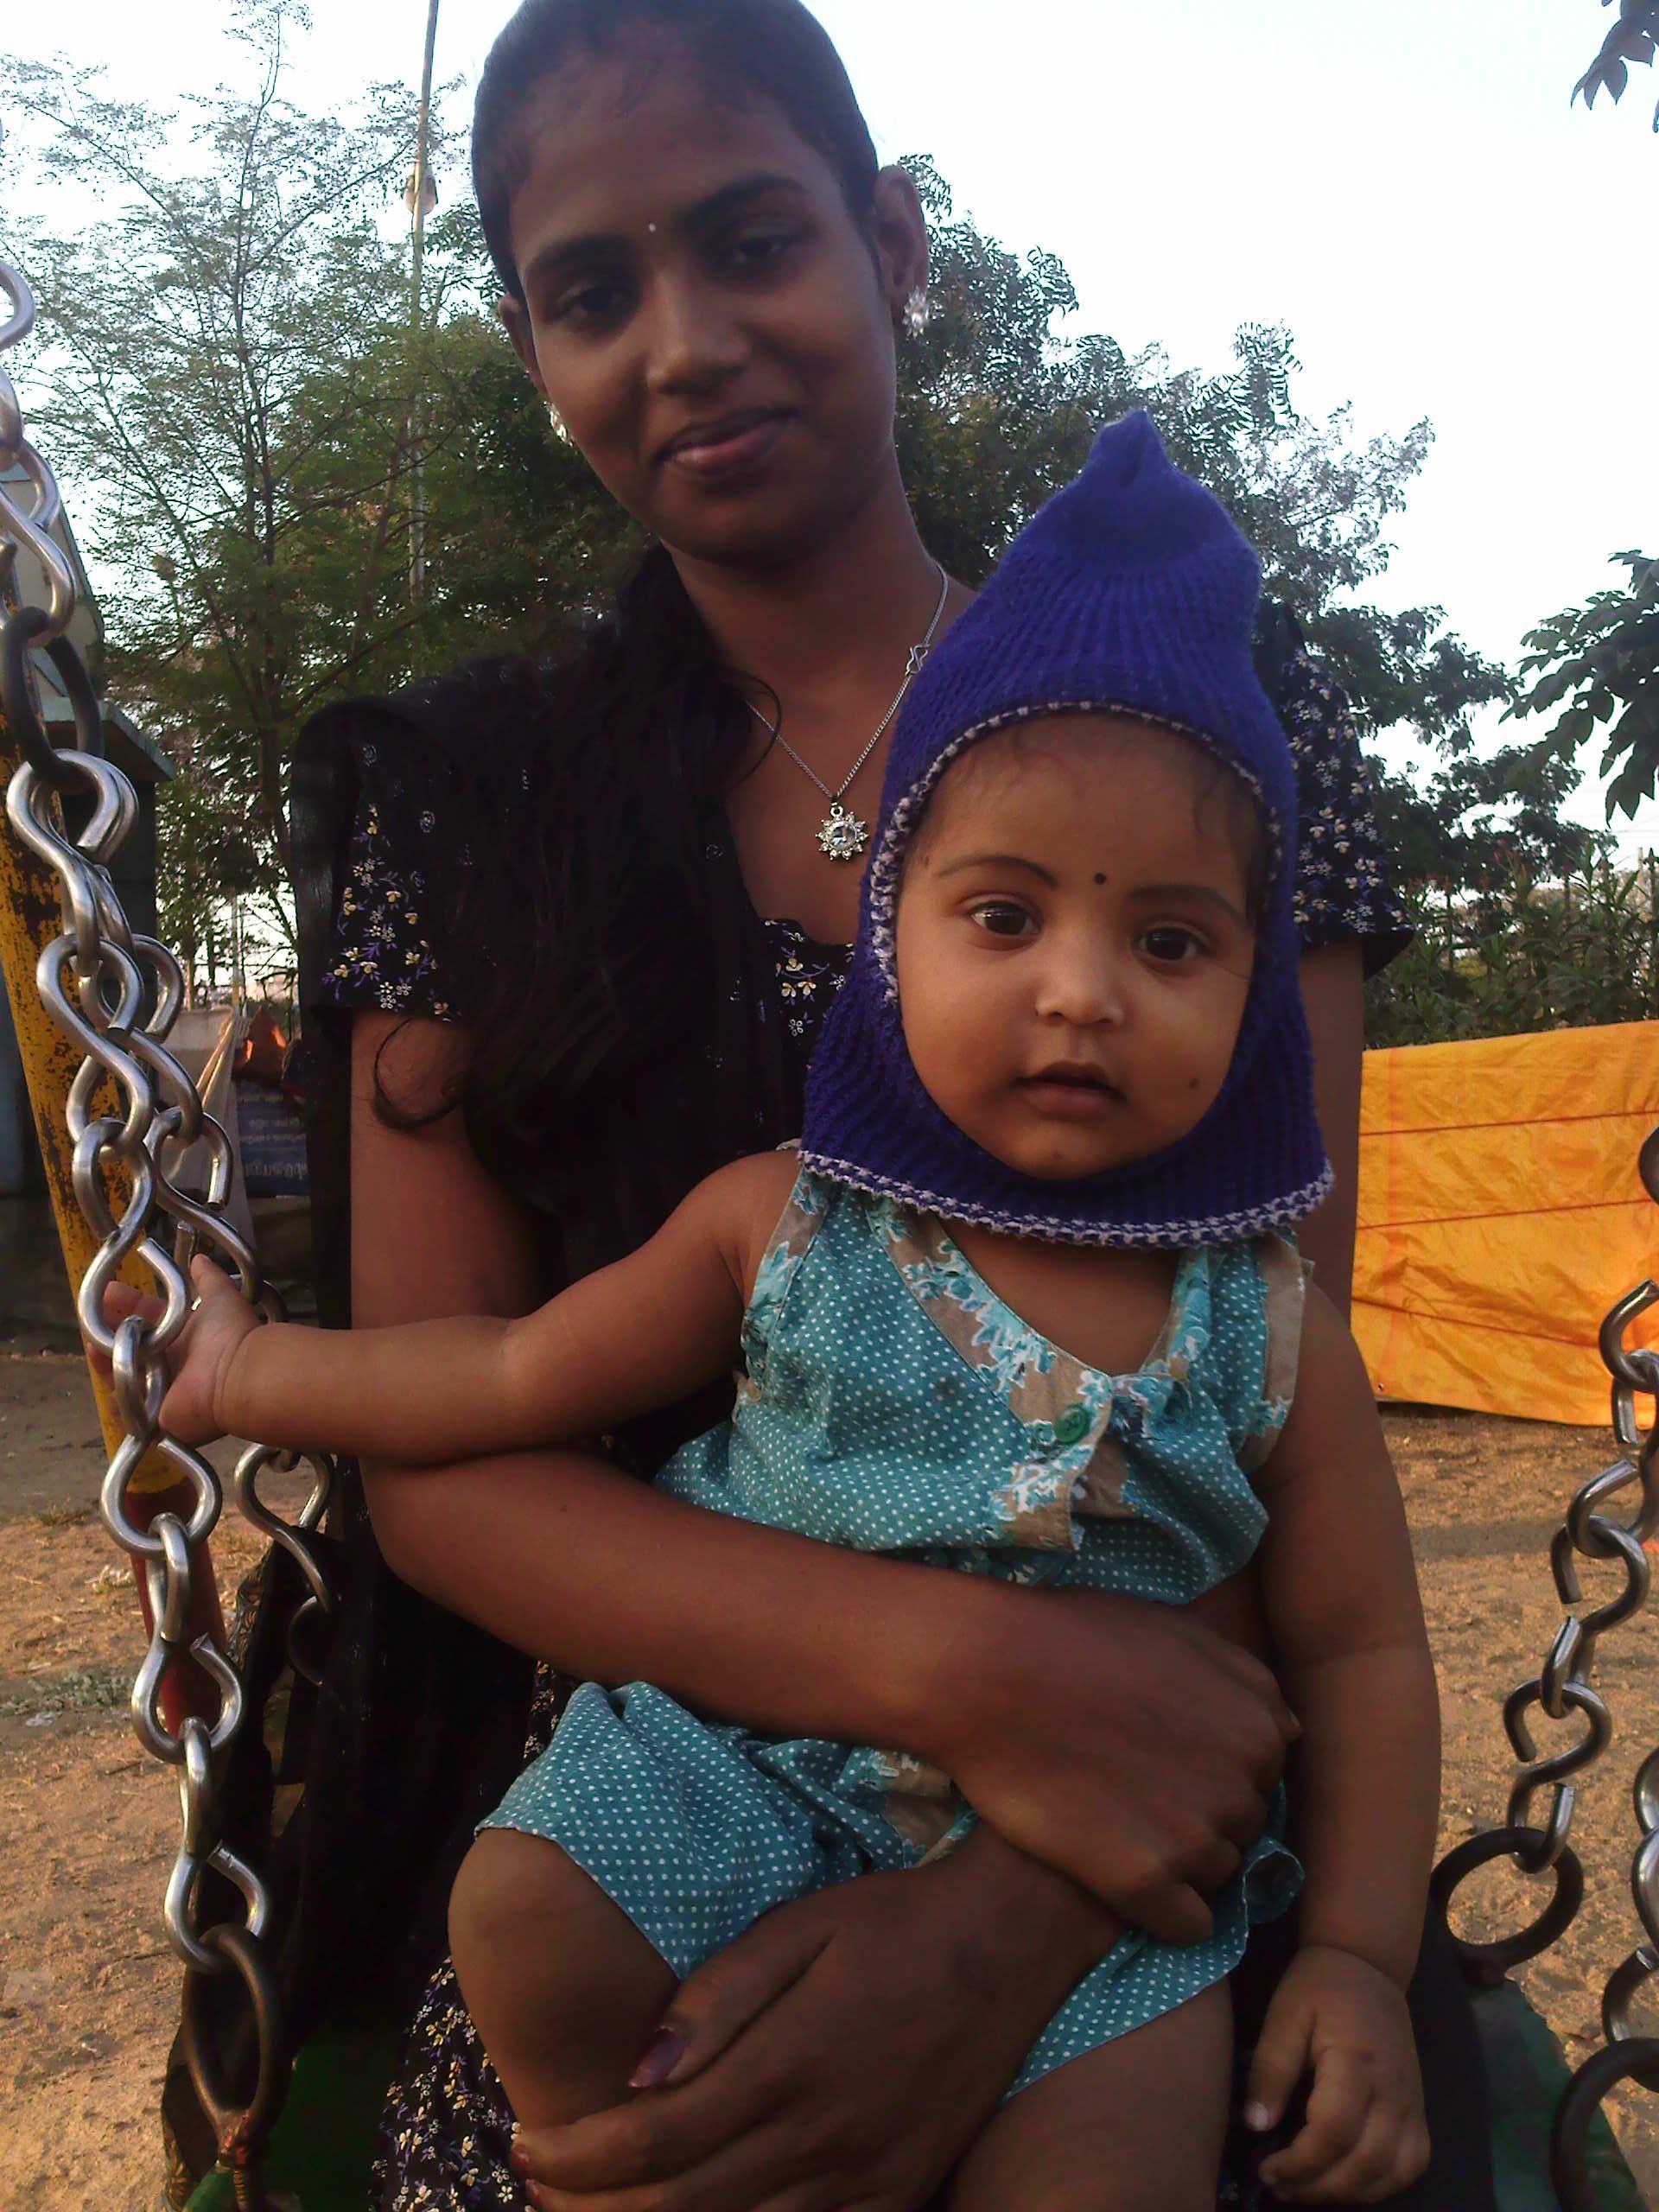 Kjenifar Female Indian Surrogate Mother From Chennai In India 